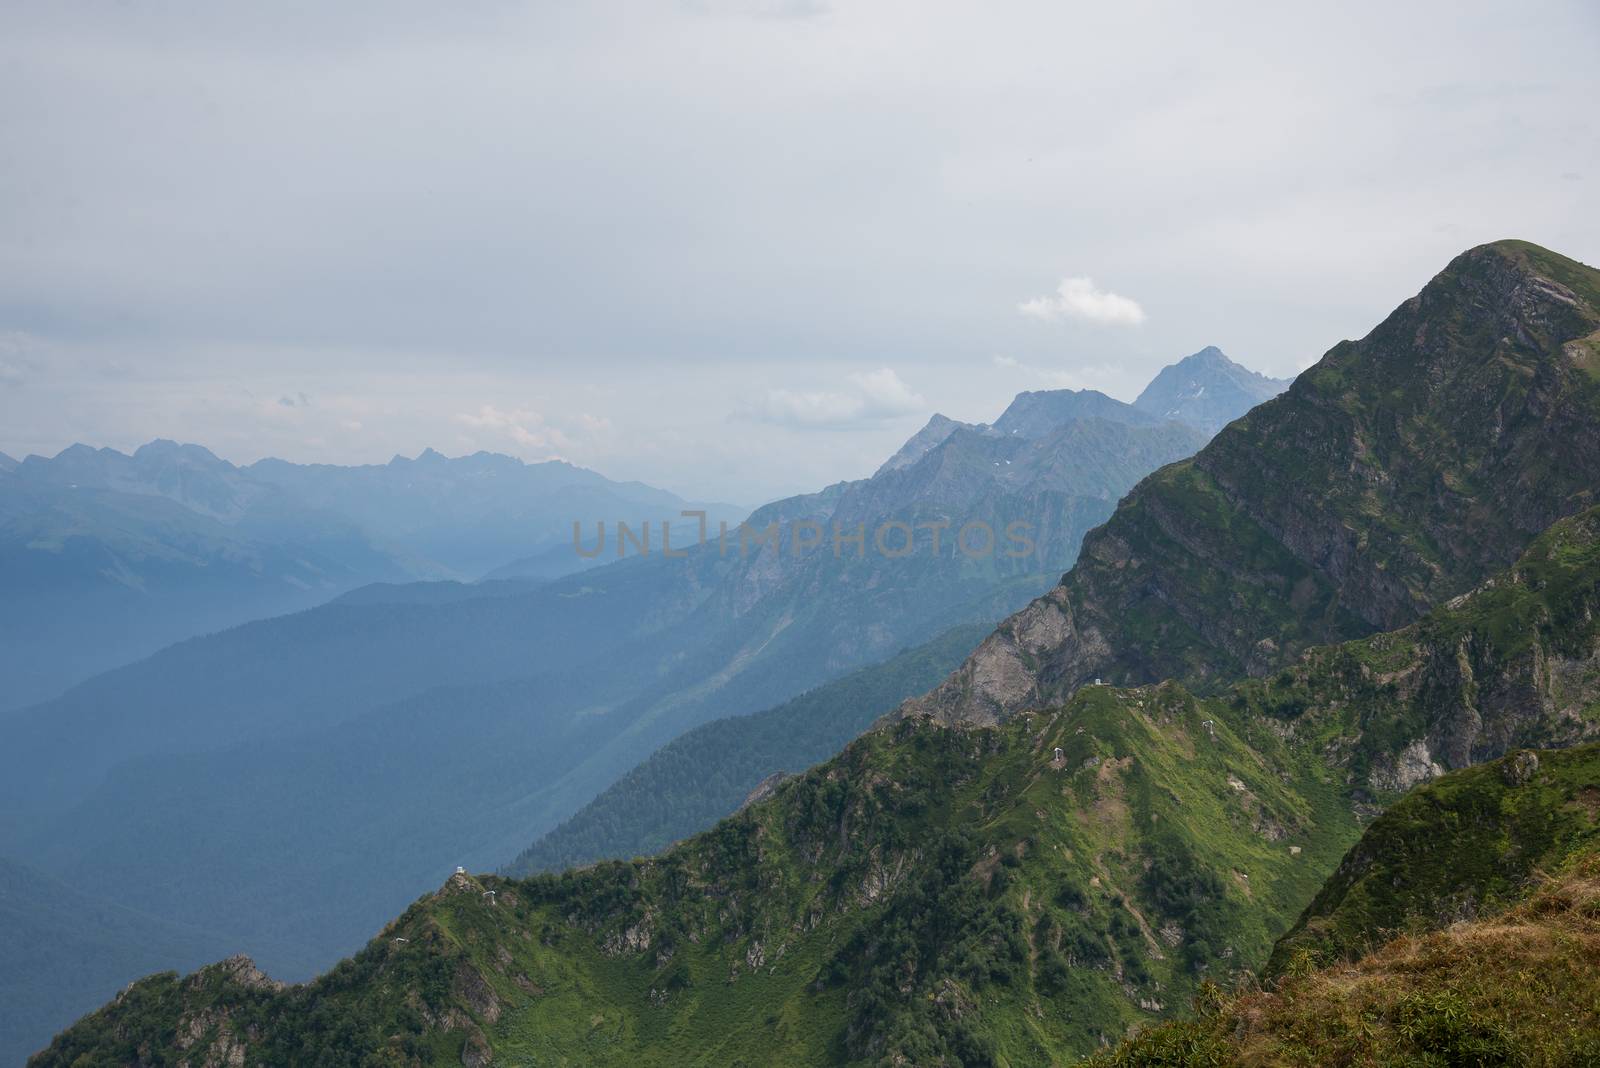 Beautiful mountBeautiful mountain sceneryain scenery by Viktoha